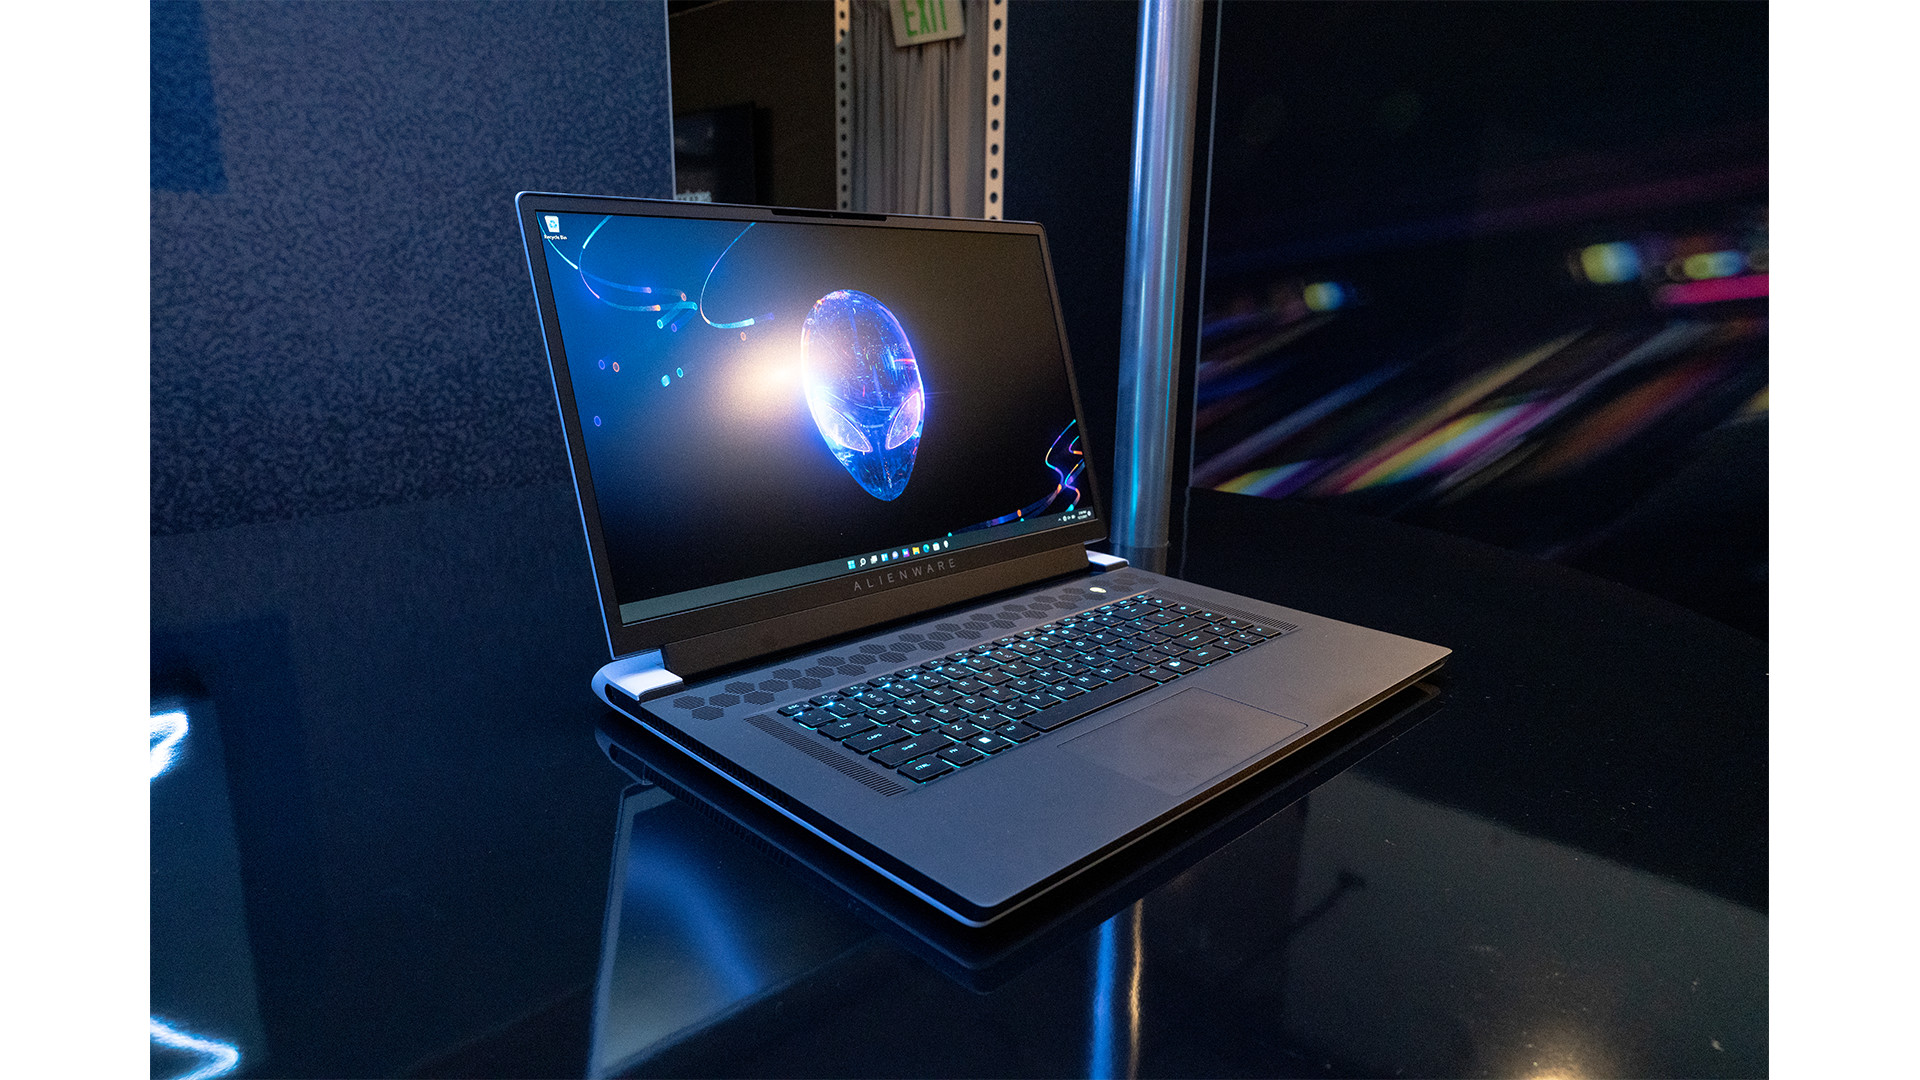 Alienware выпускает игровые ноутбуки с быстрыми дисплеями с частотой 480 Гц, и у нас есть вопросы